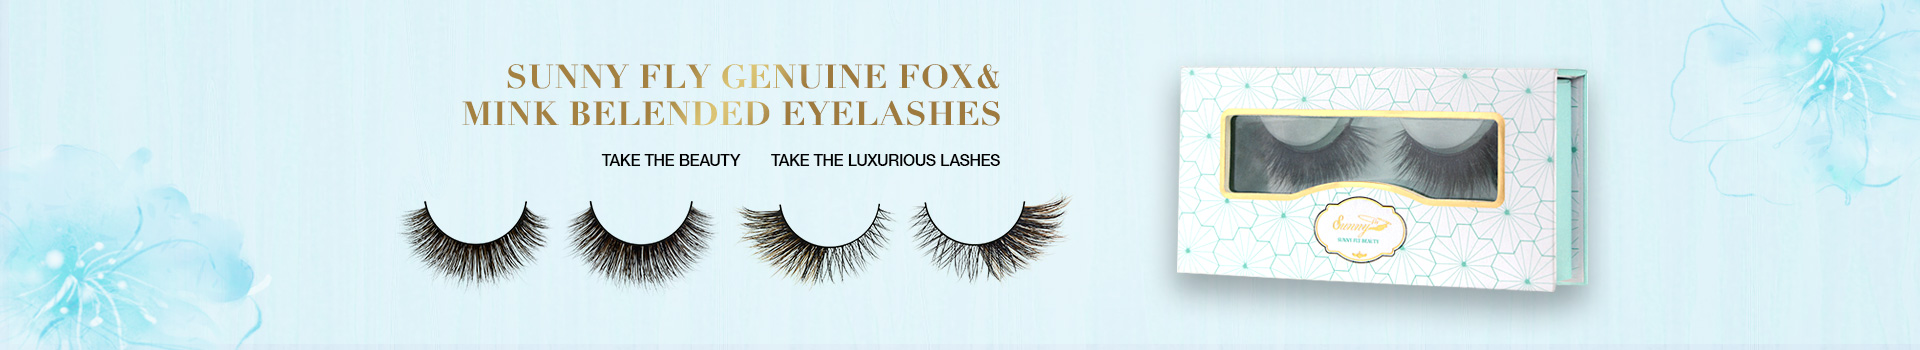 Fox & Mink Fur Blended Eyelashes FMB23